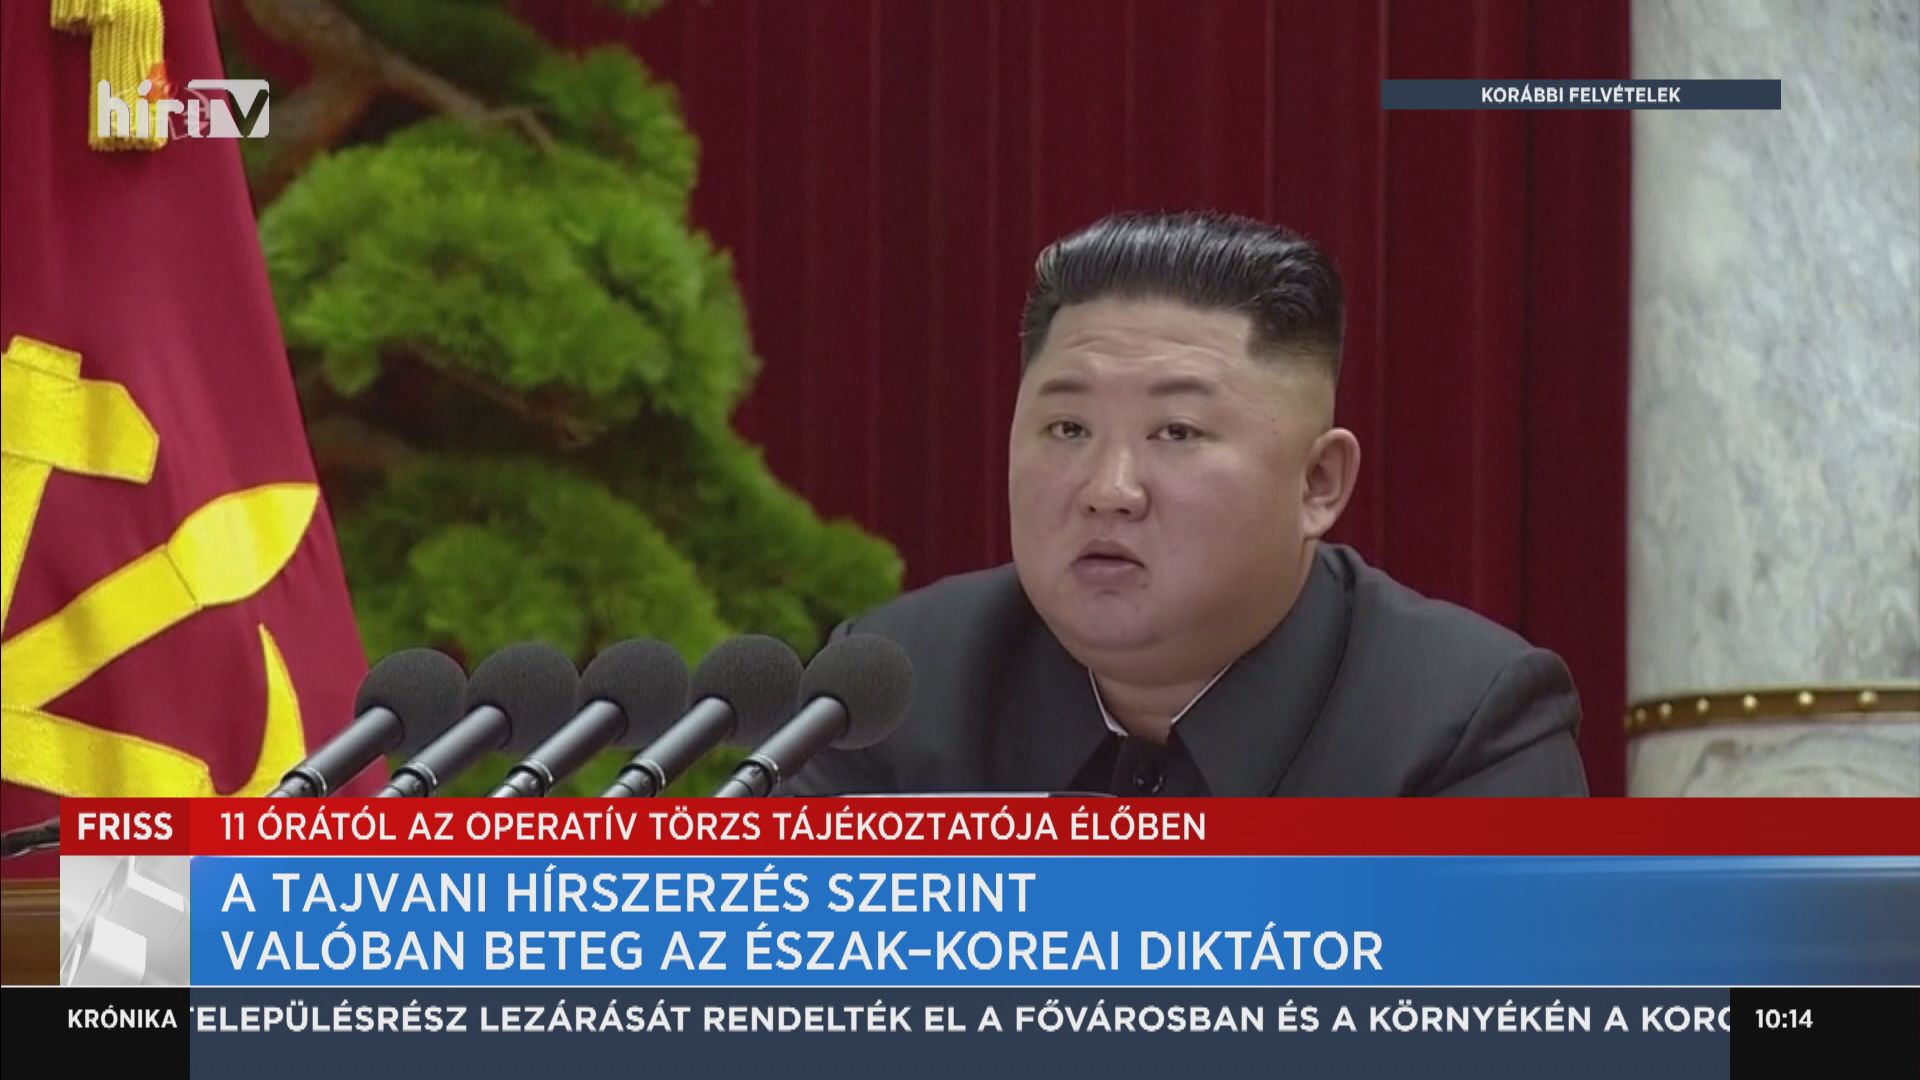 A tajvani hírszerzés szerint valóban beteg az észak-koreai diktátor